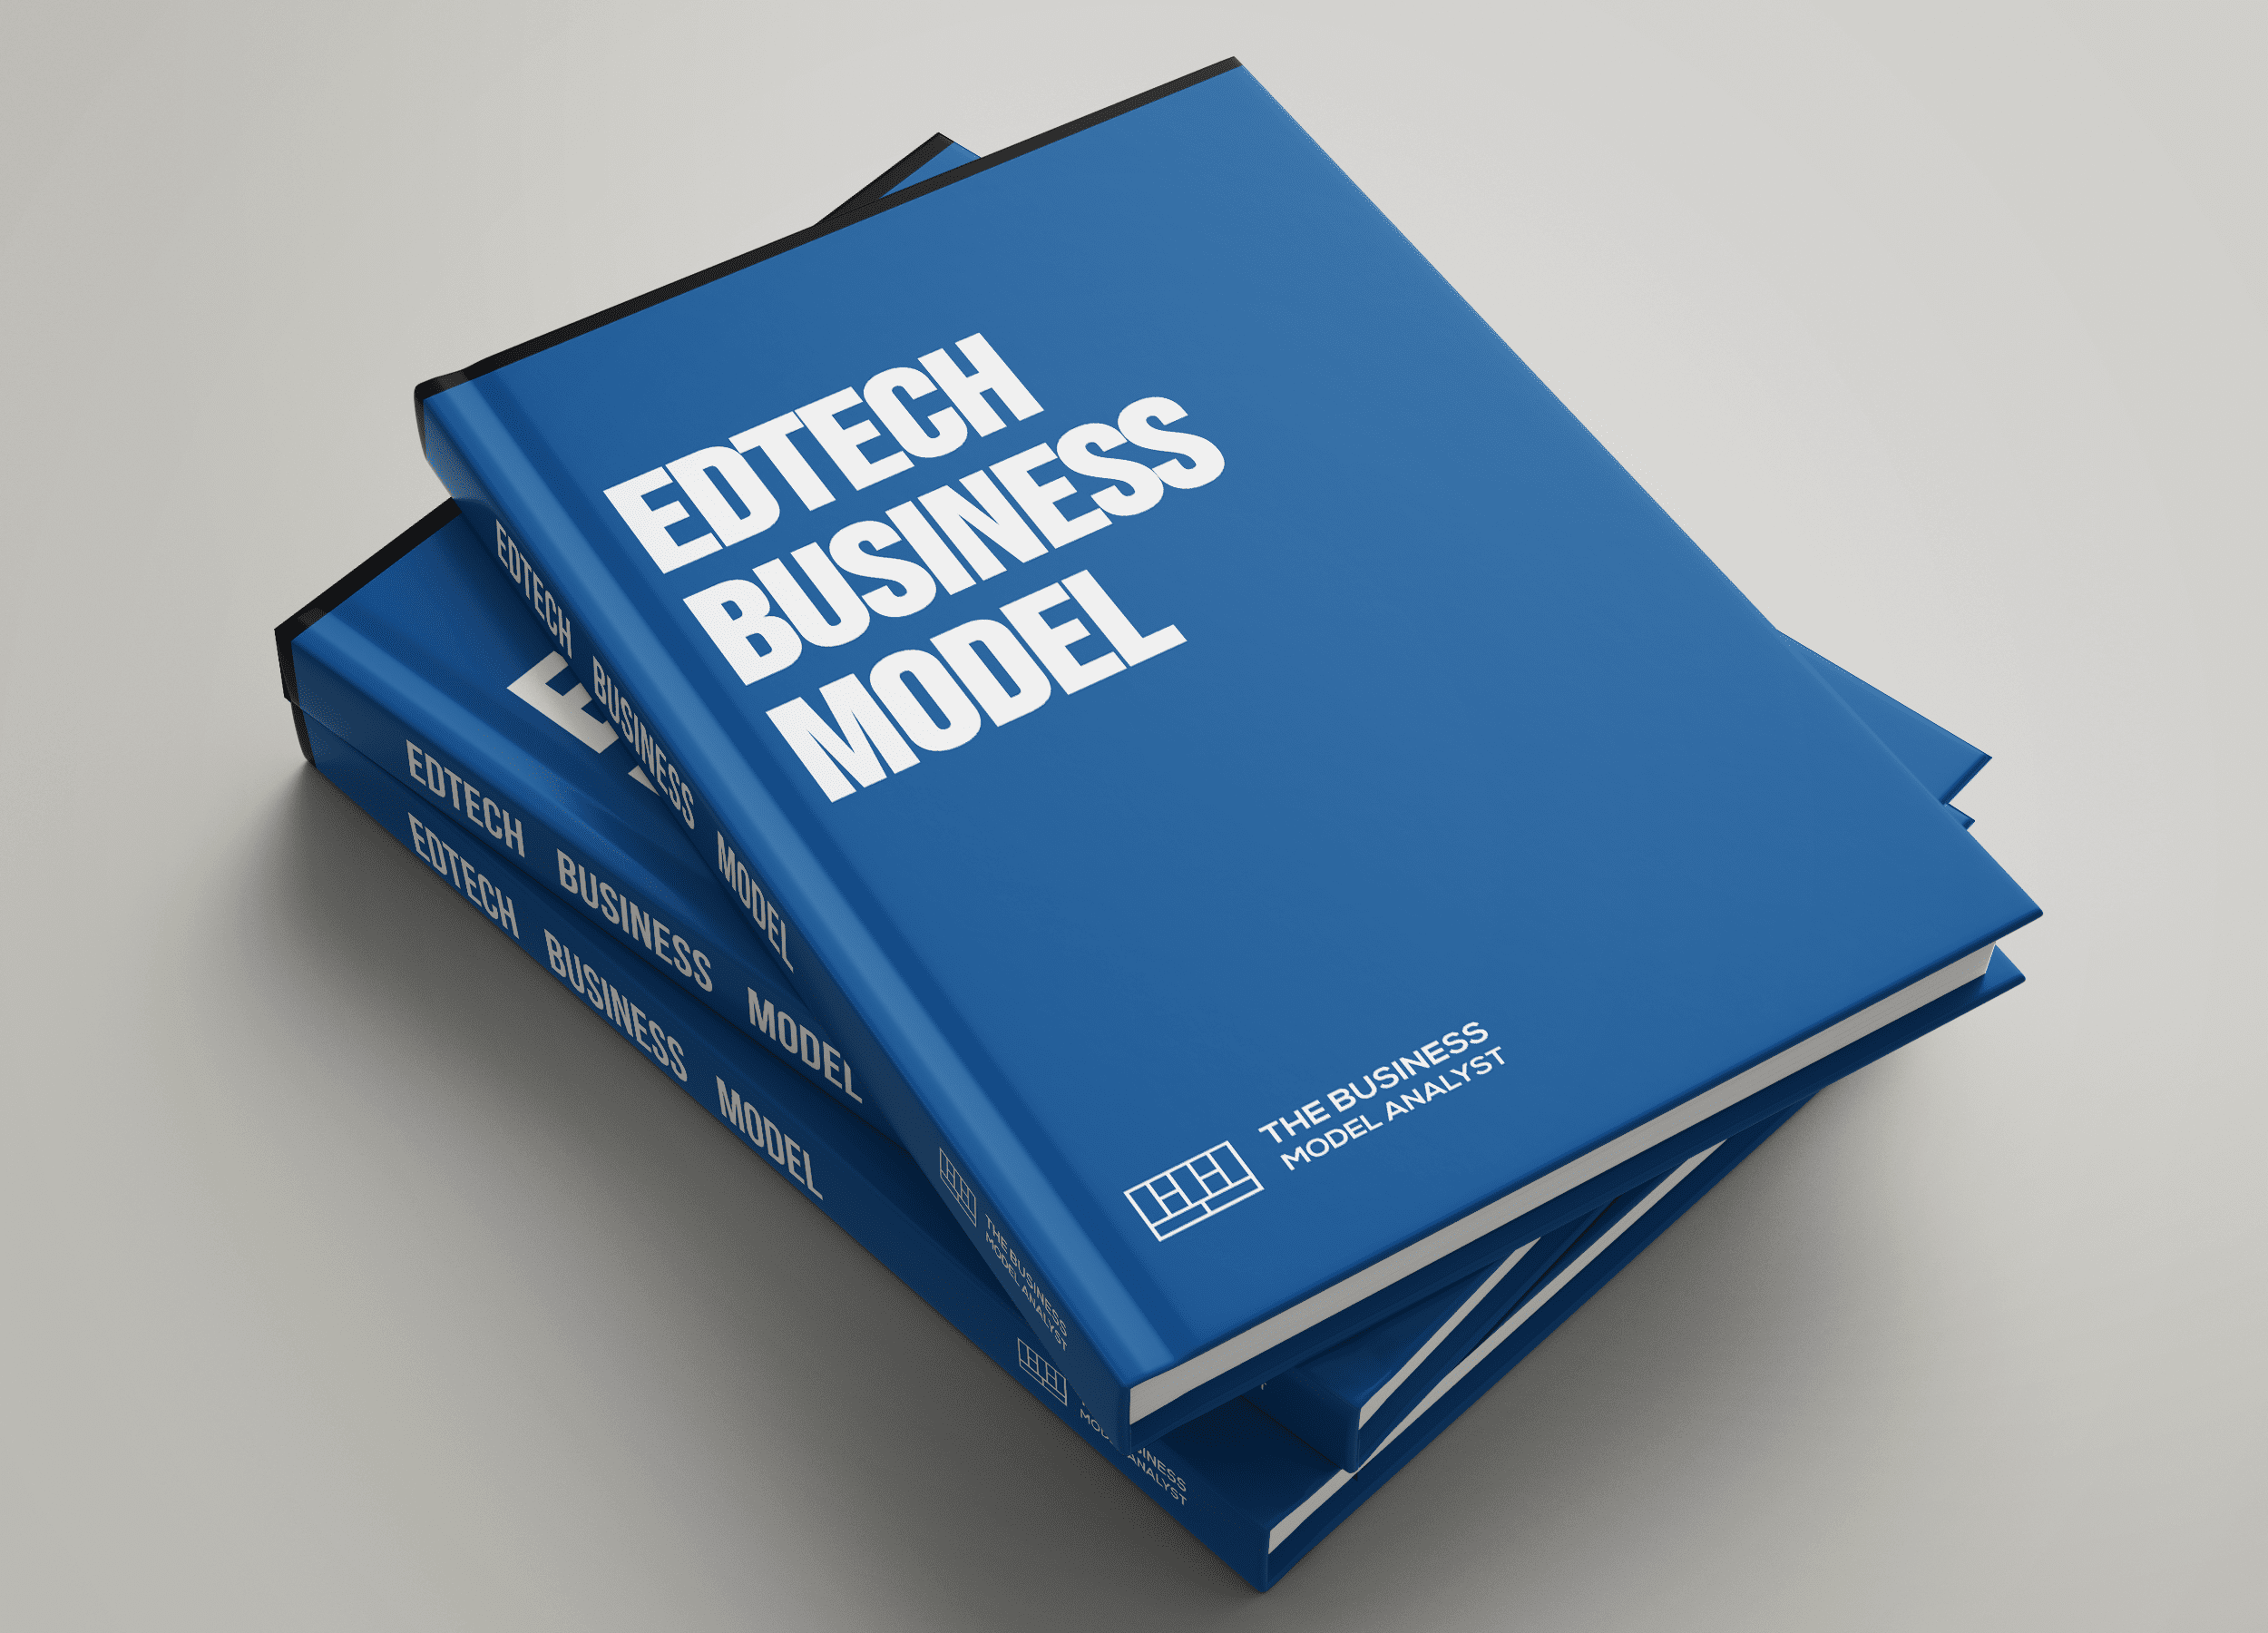 Edtech Business Models